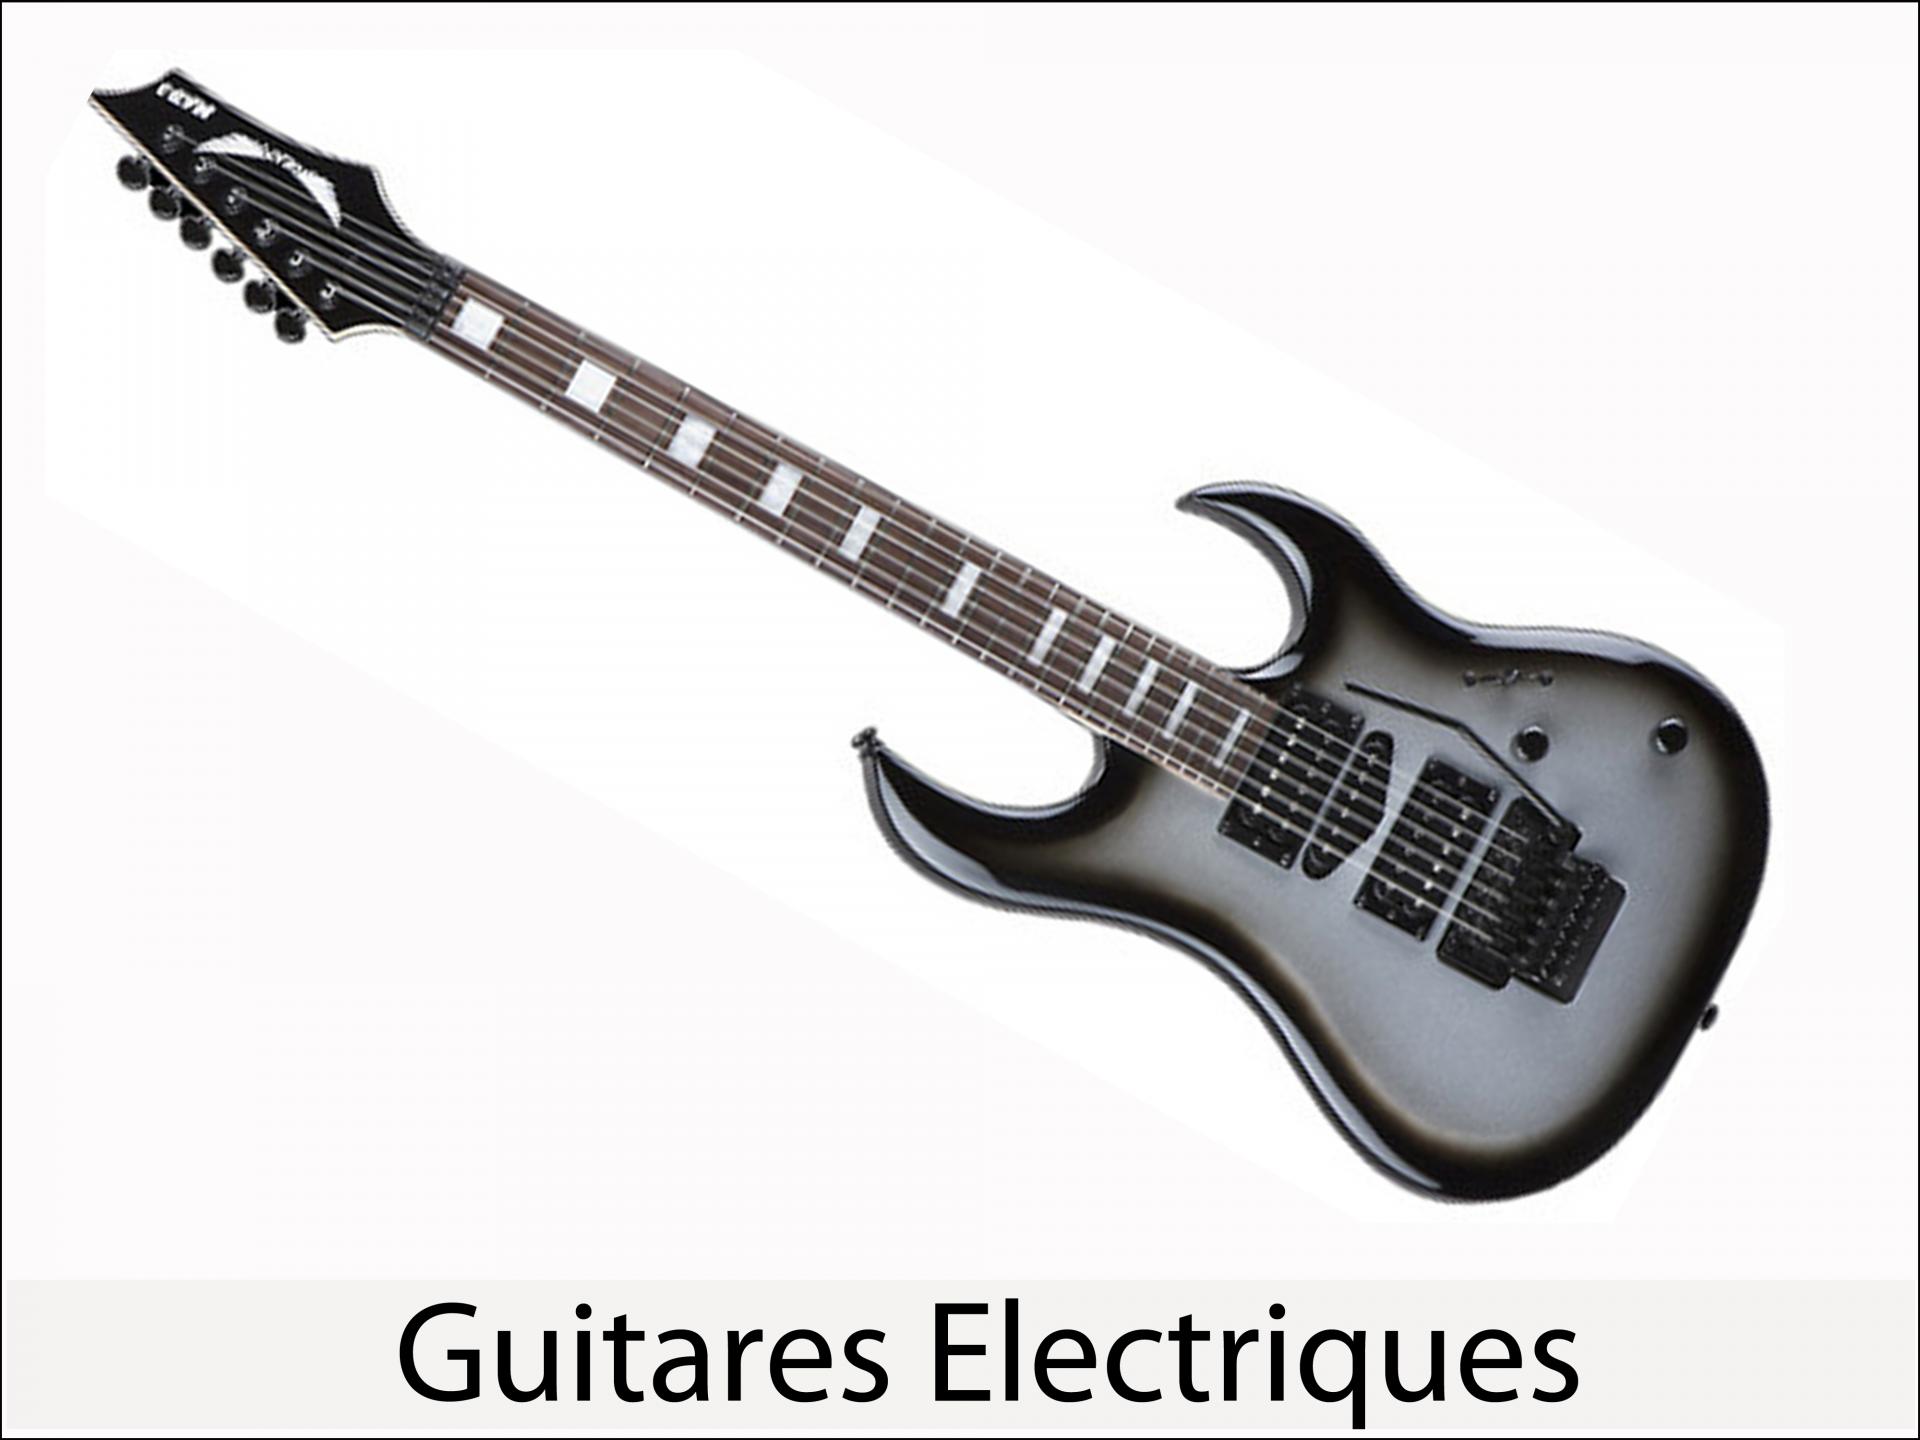 Acceuil carre guitares electriques